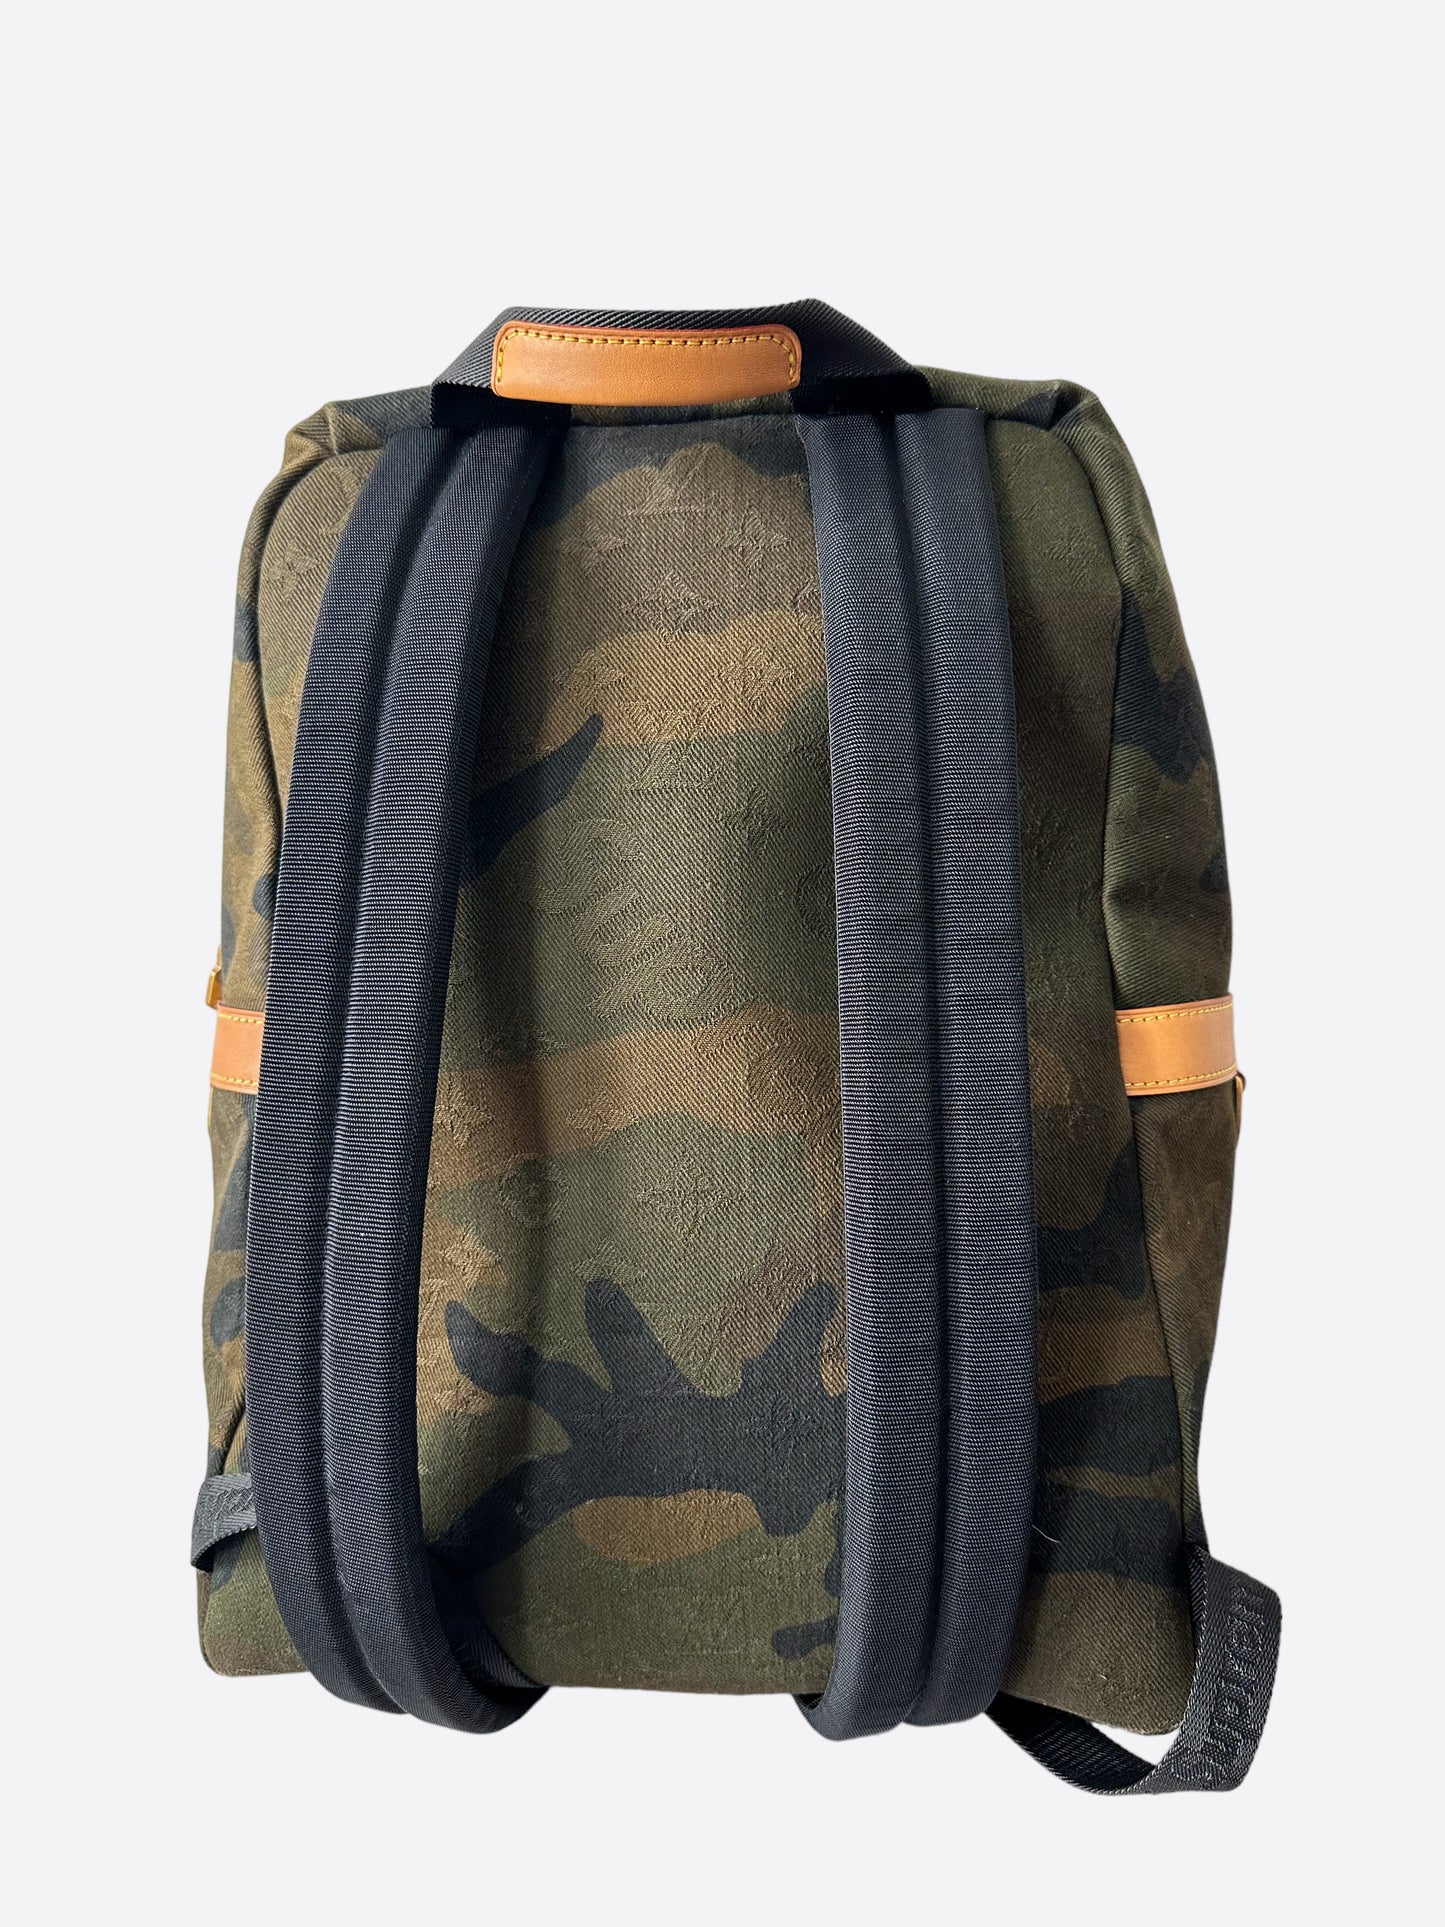 Supreme x Louis Vuitton Apollo Backpack Monogram Camo – Pastor & Co.